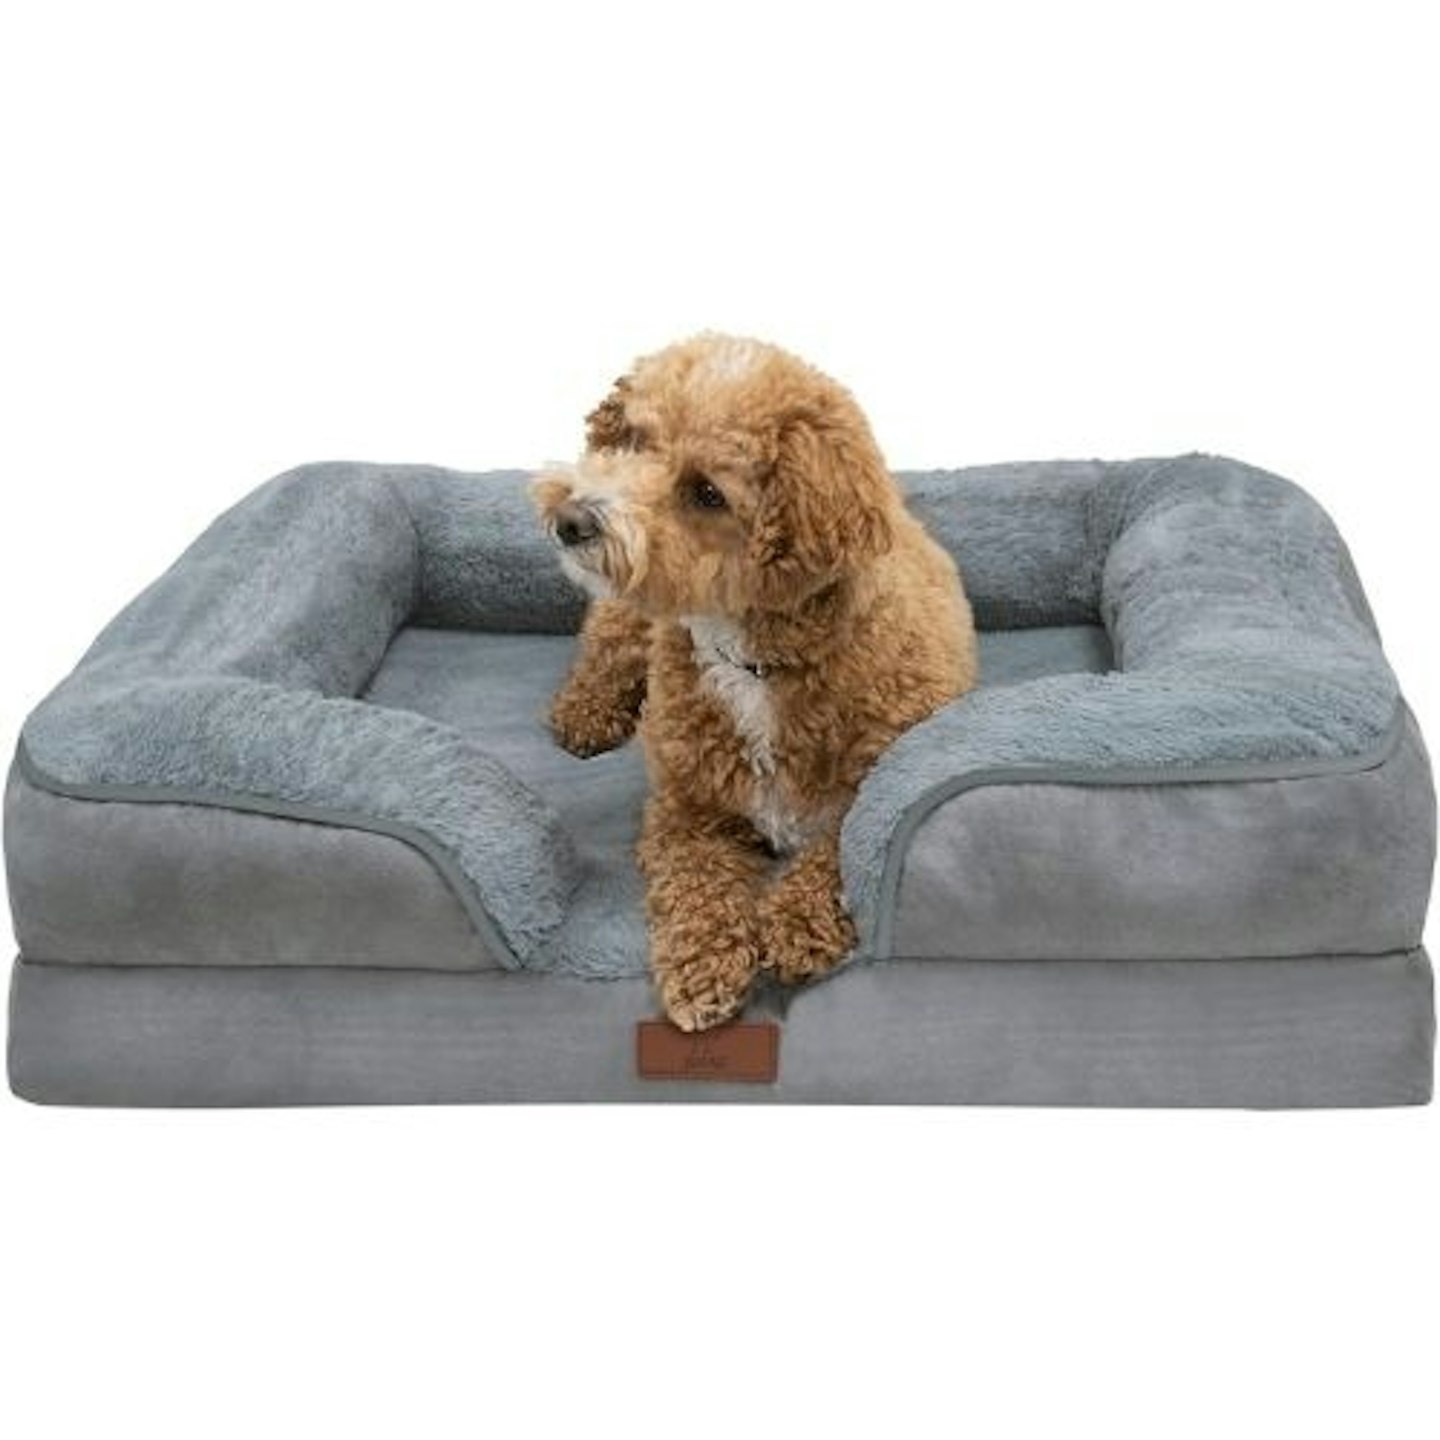 Fur & Bone Memory Foam Dog Bed